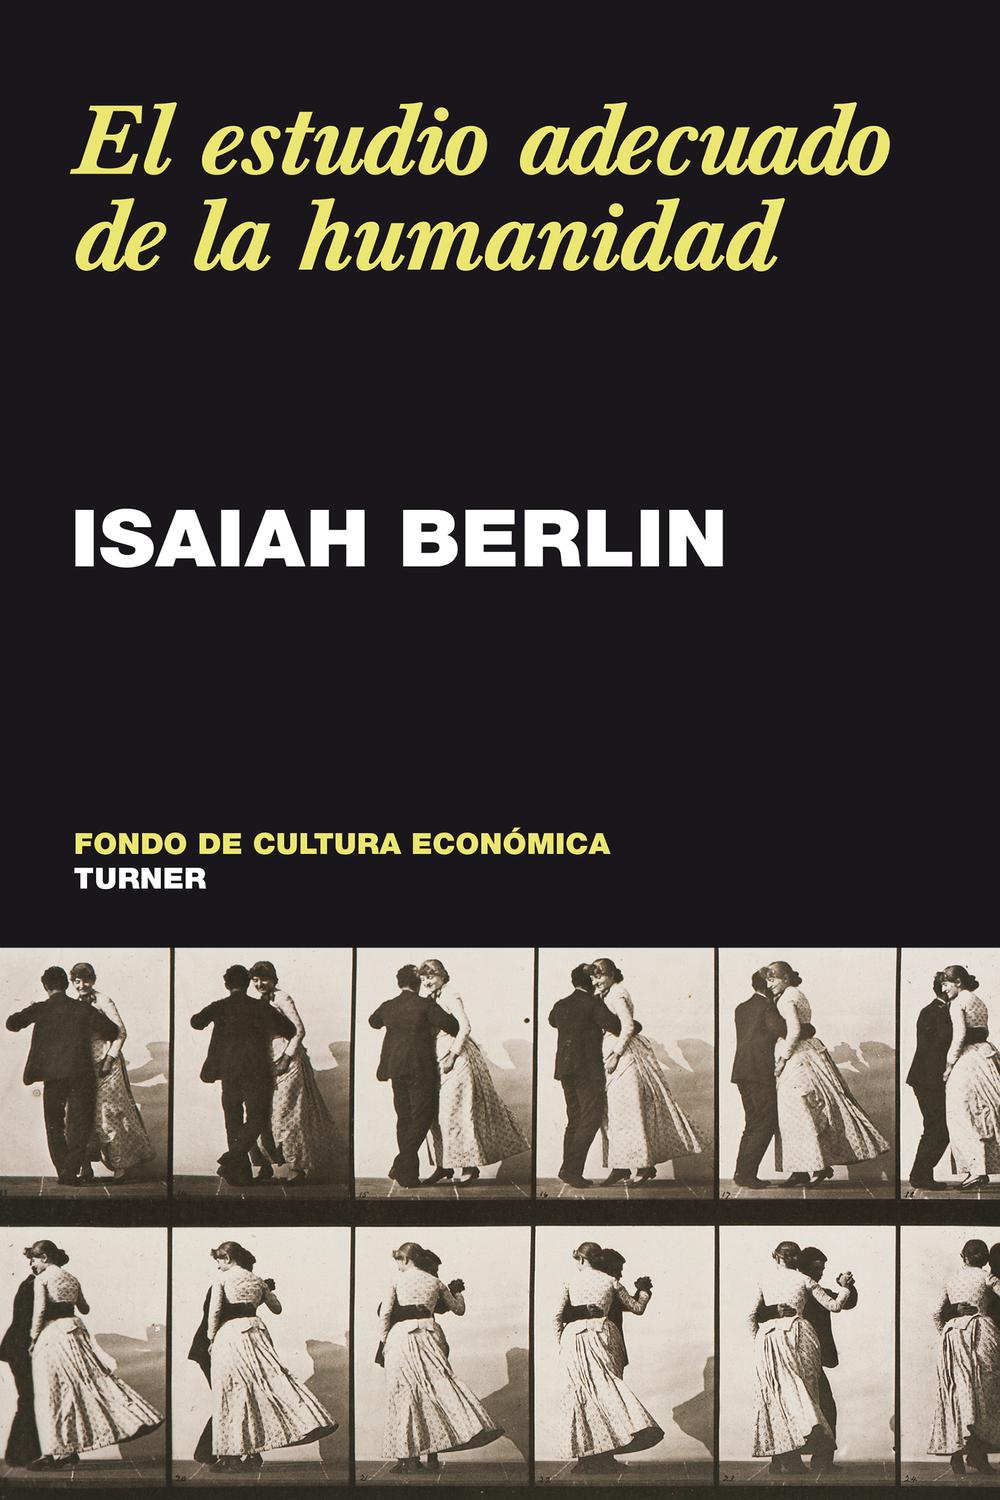 El estudio adecuado de la humanidad - Isaiah Berlin, Aramburo González, María Antonia Neira, Hero Rodríguez Toro, Juan José Utrilla